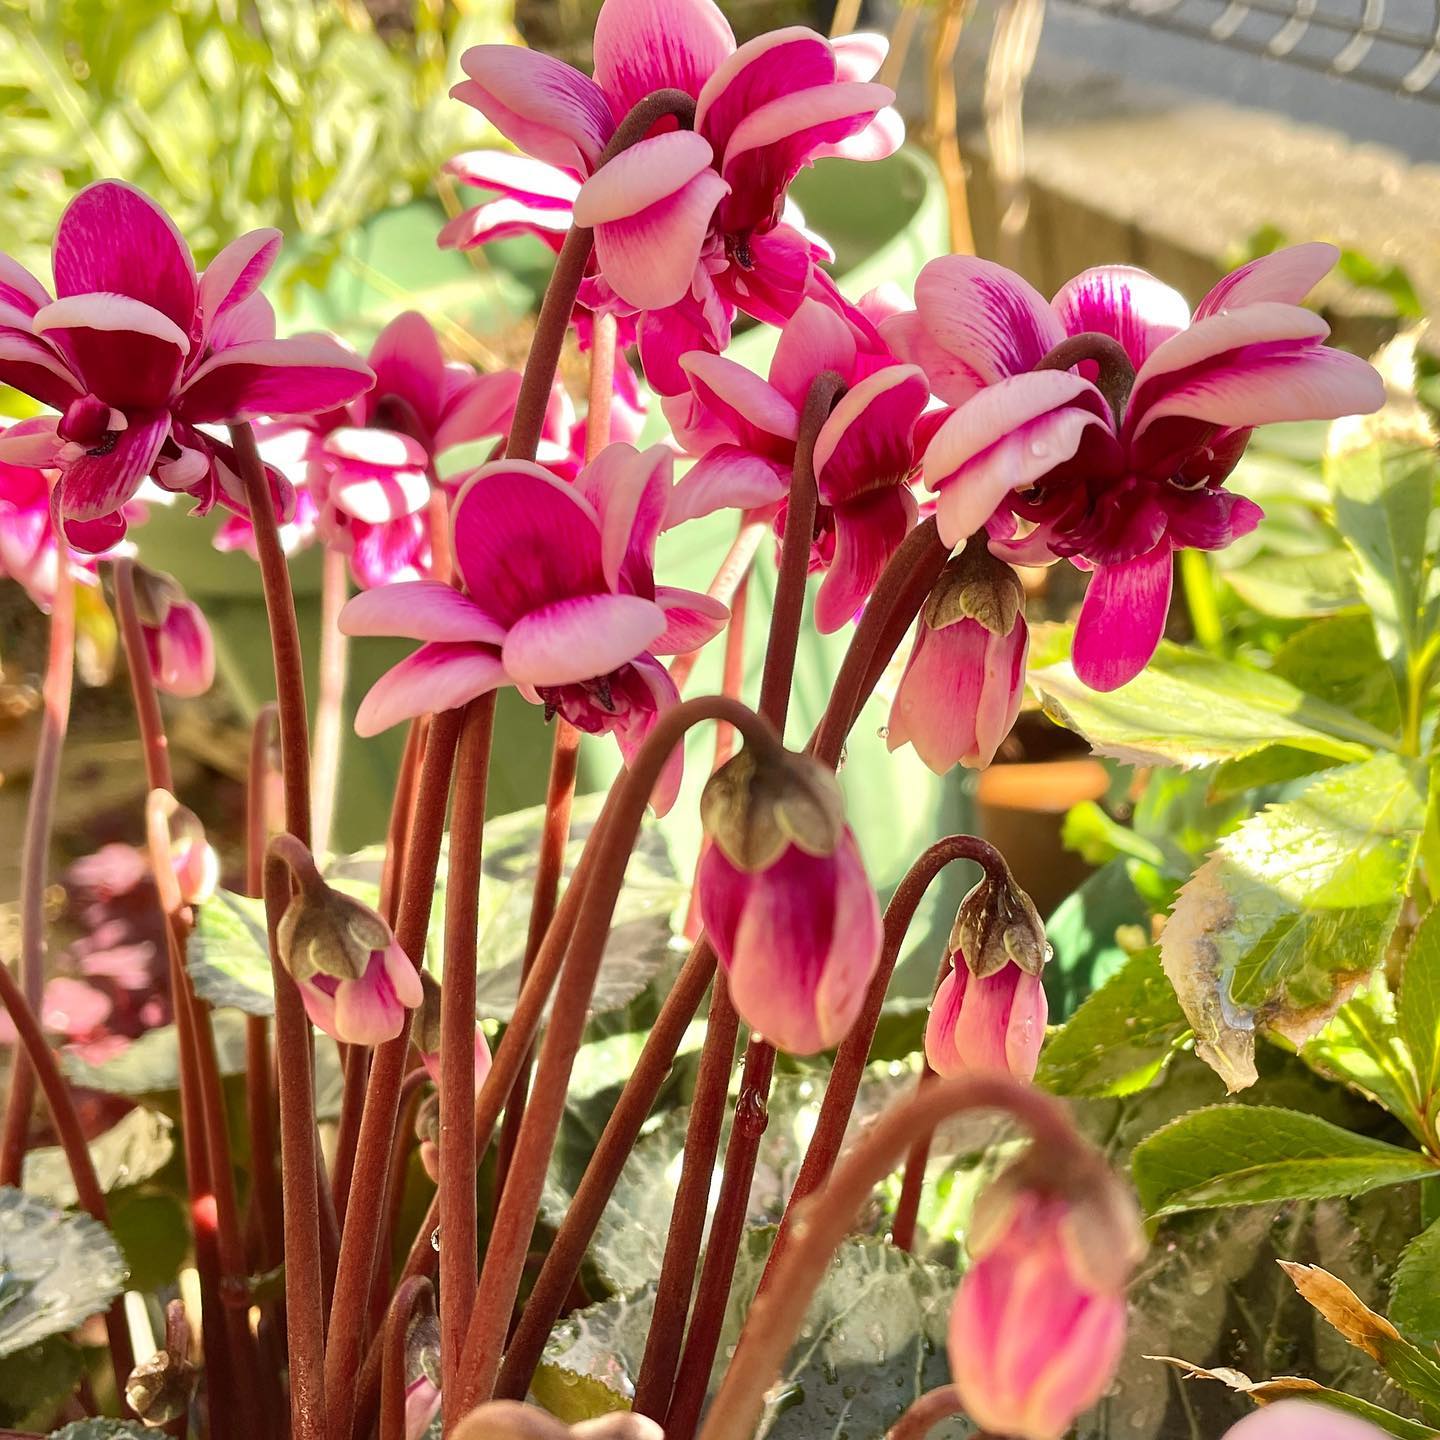 昨日ホームセンターから救済した、花の出方がイマイチとの事で激安セールの八重咲きシクラメン。来年も綺麗に咲くといいな。 #シクラメン #cyclamen #gardening #花好きな人と繋がりたい